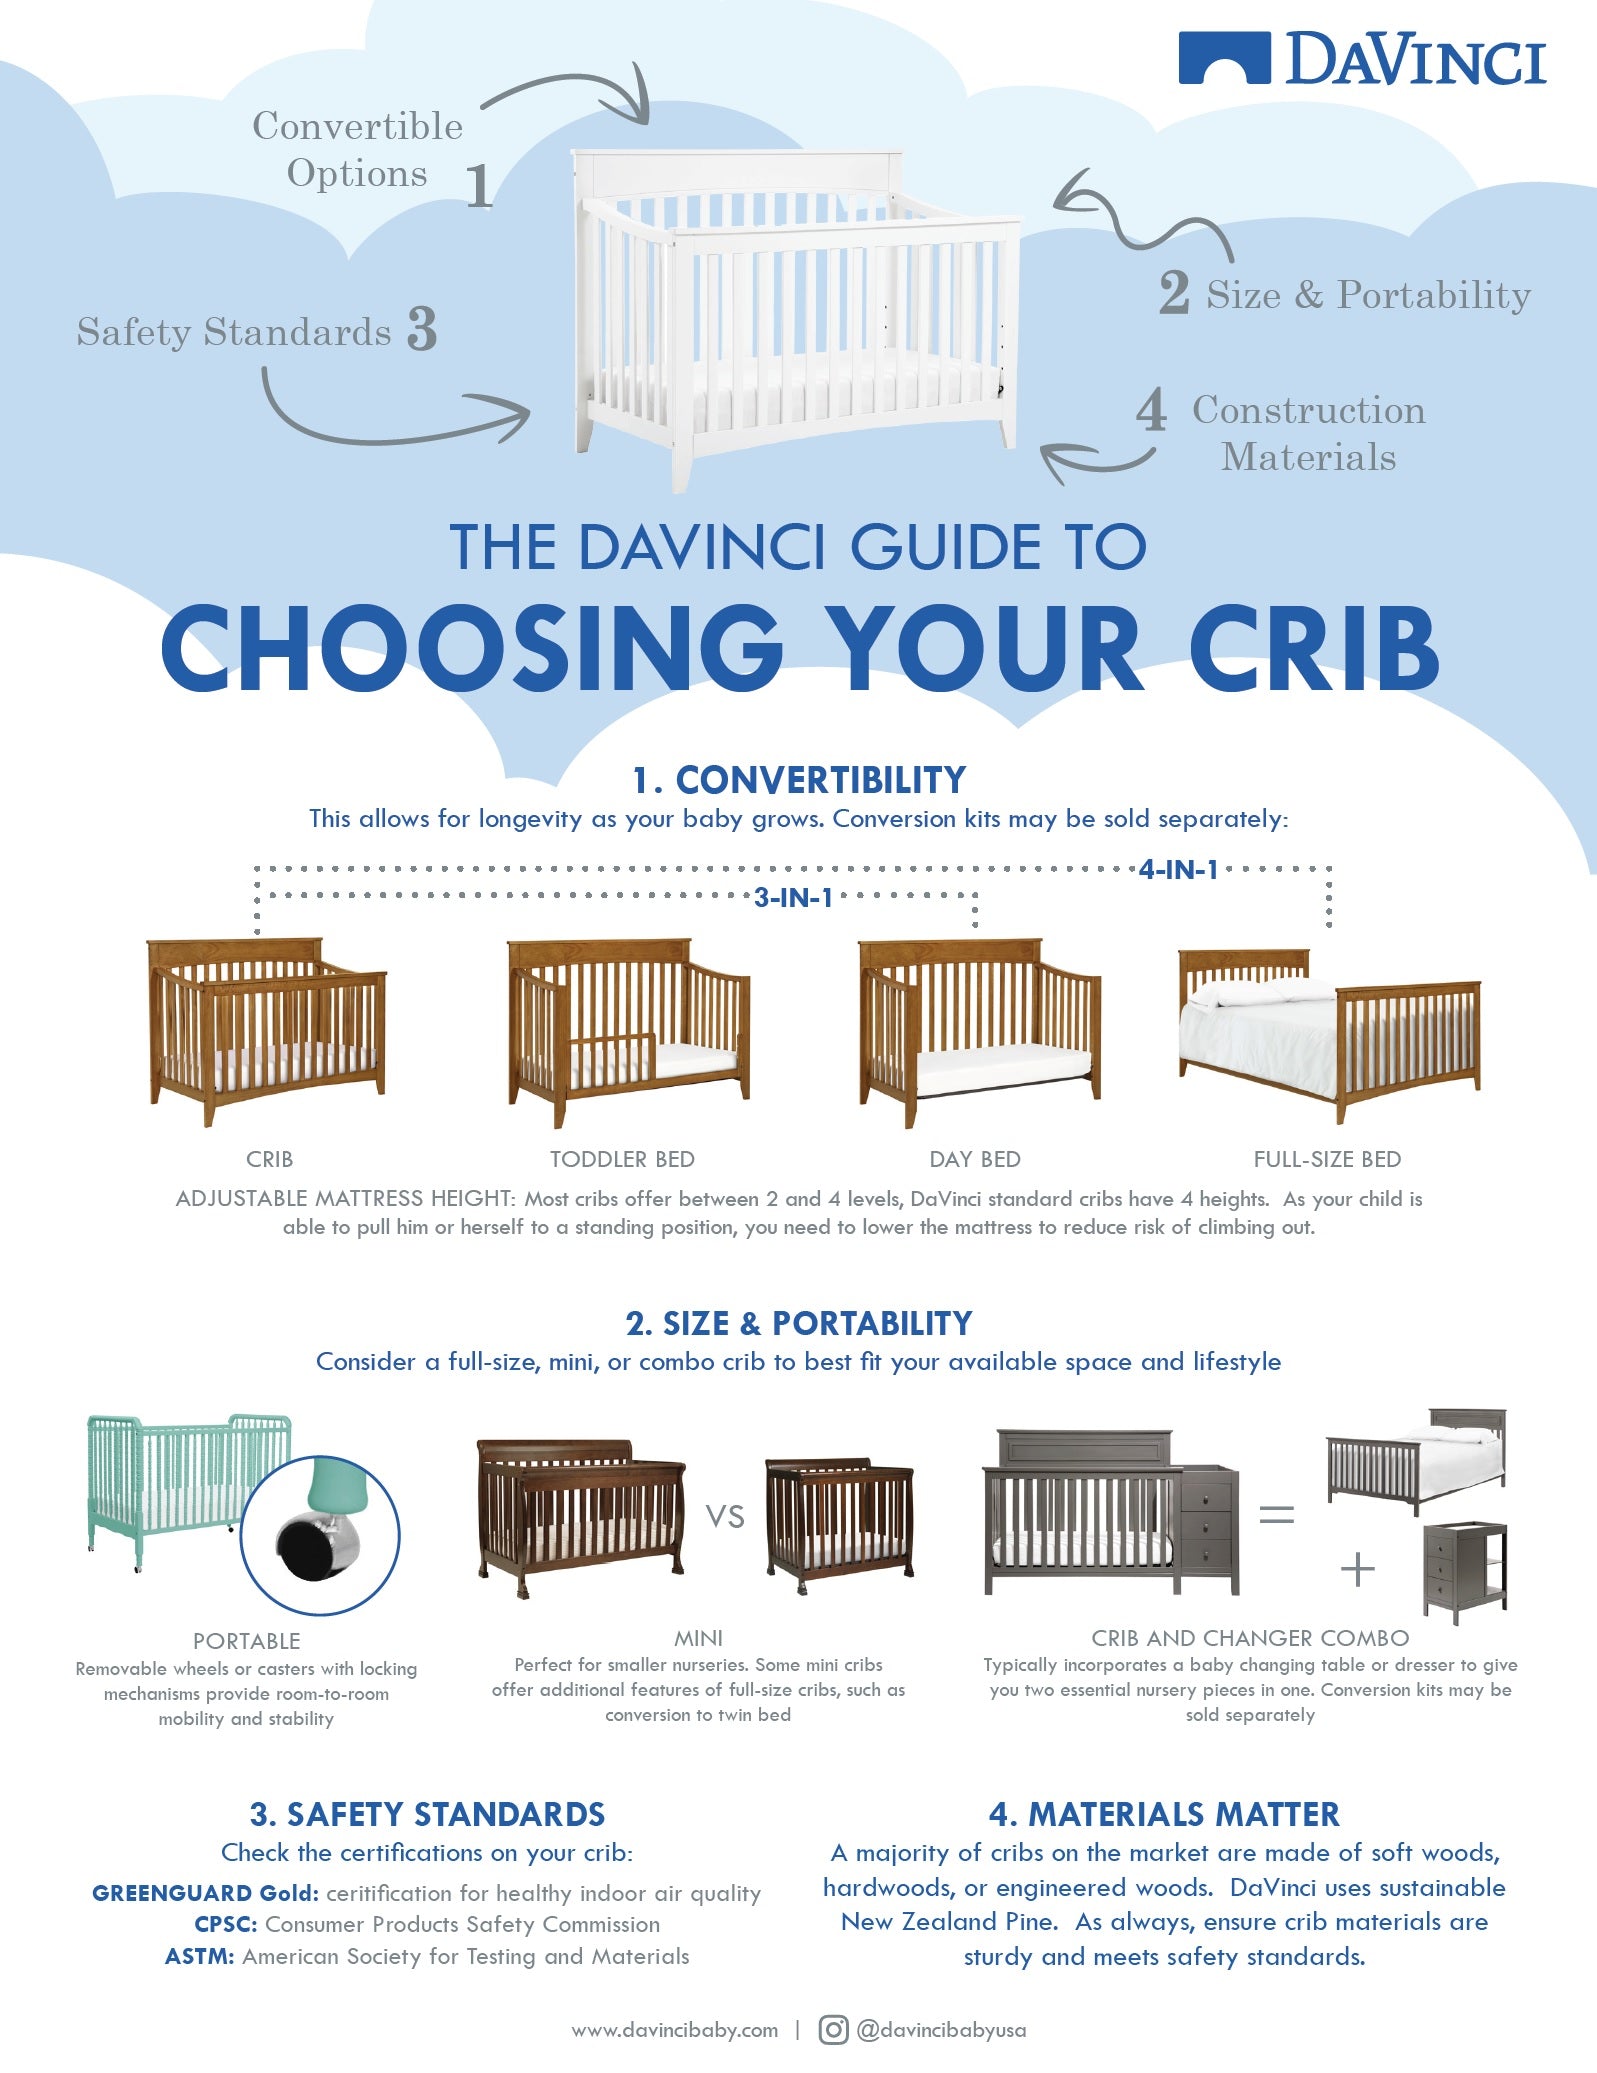 crib buying guide